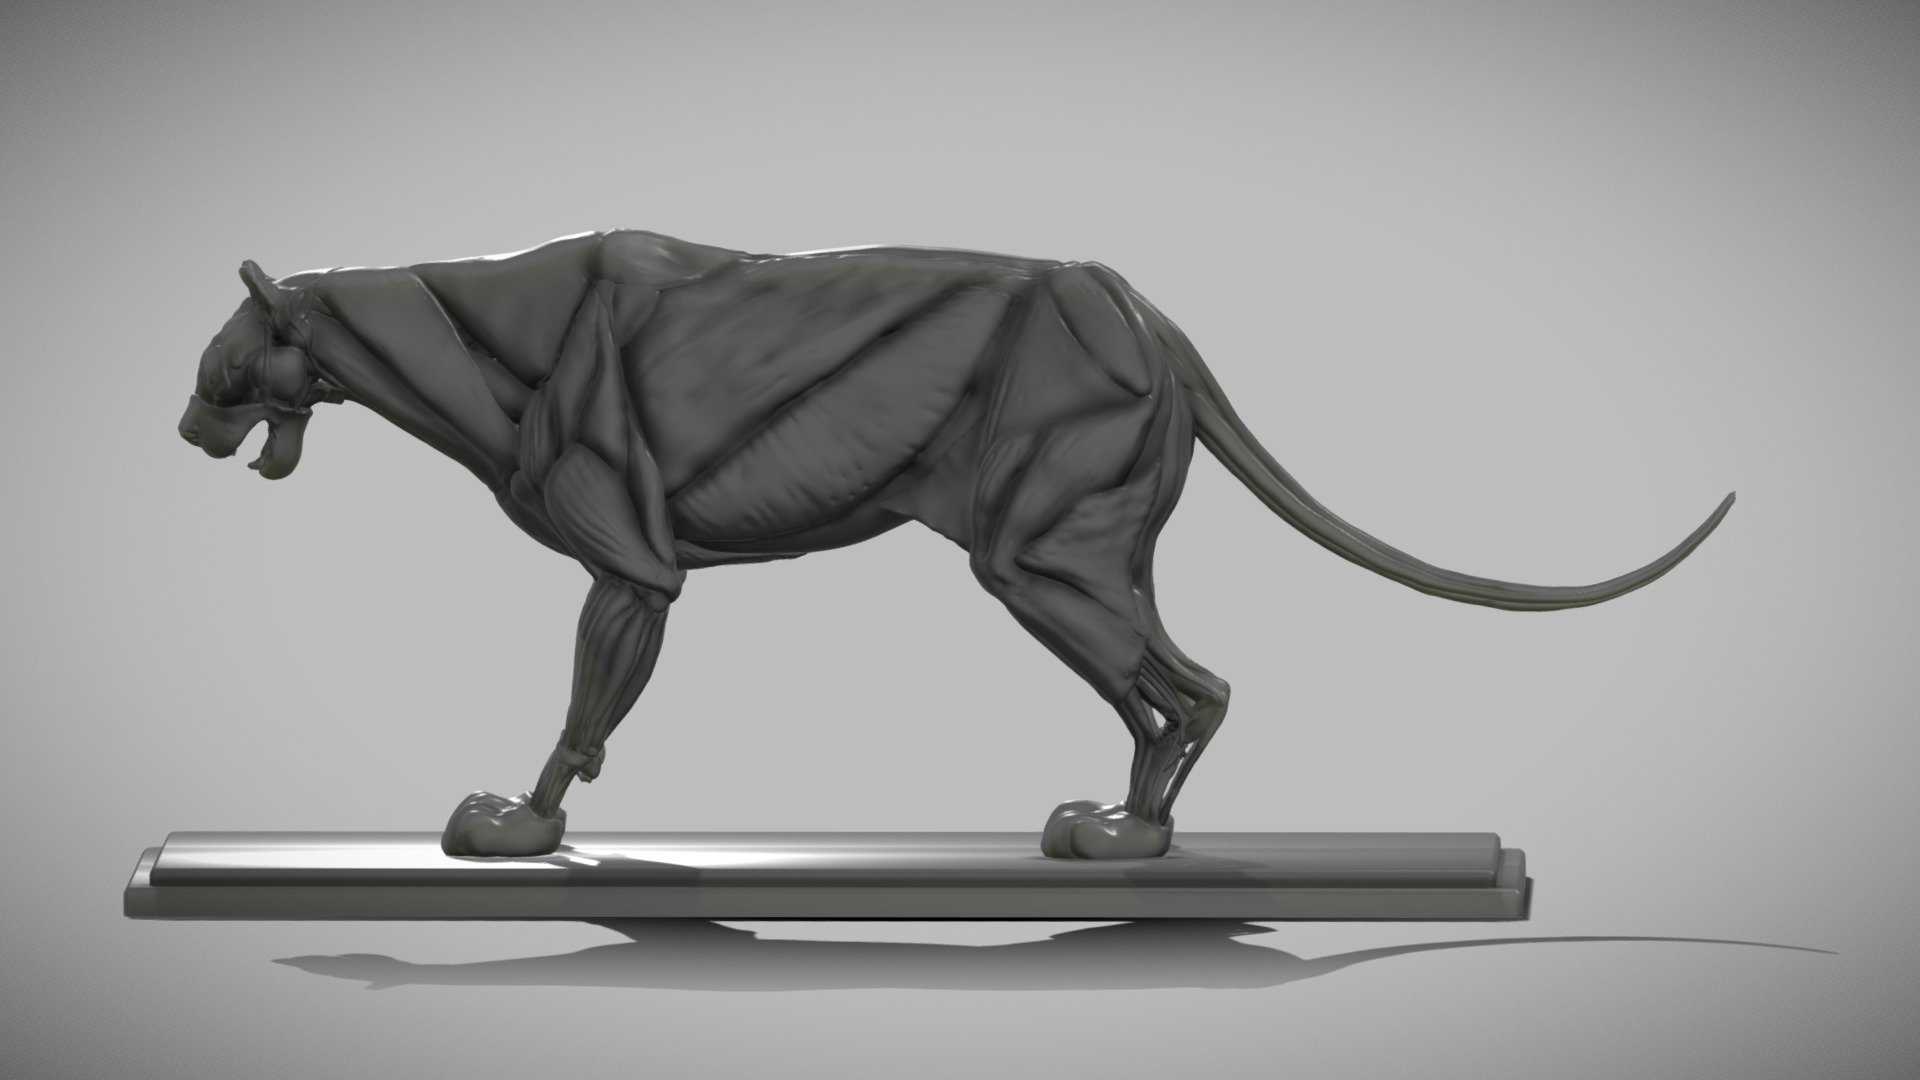 Cougar (Puma concolor) anatomy 3d model.

References:
&ldquo;Handbuch der Anatomie der Tiere für Künstler'&ldquo;;
&ldquo;LION ANATOMY FOR ARTISTS: SKELETON AND MUSCLE DIAGRAMS (https://monikazagrobelna.com/)